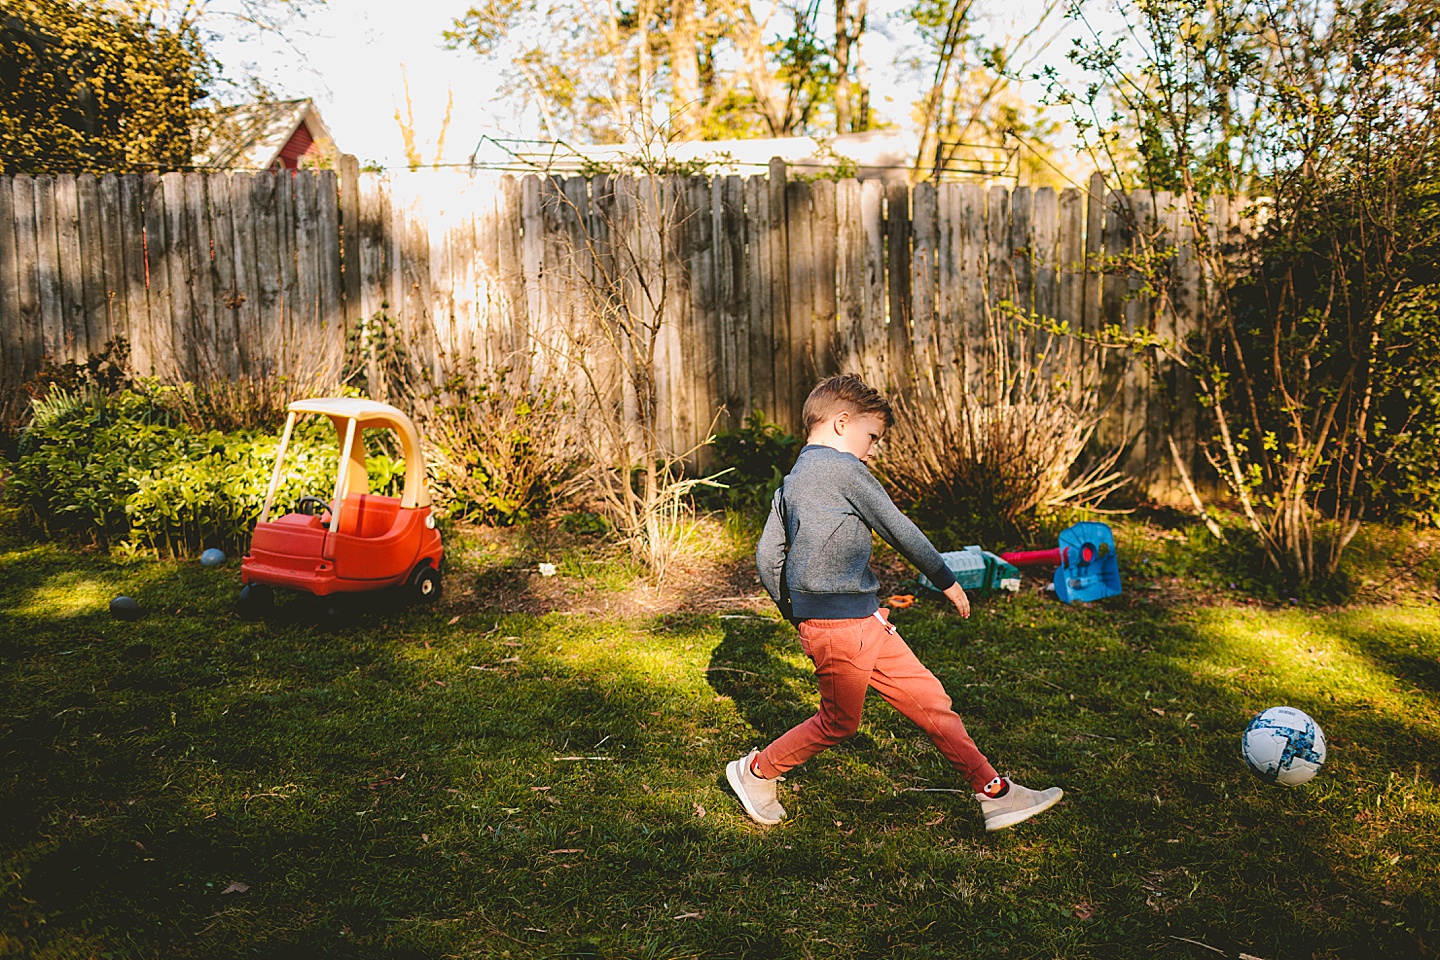 Boy kicking soccer ball in yard